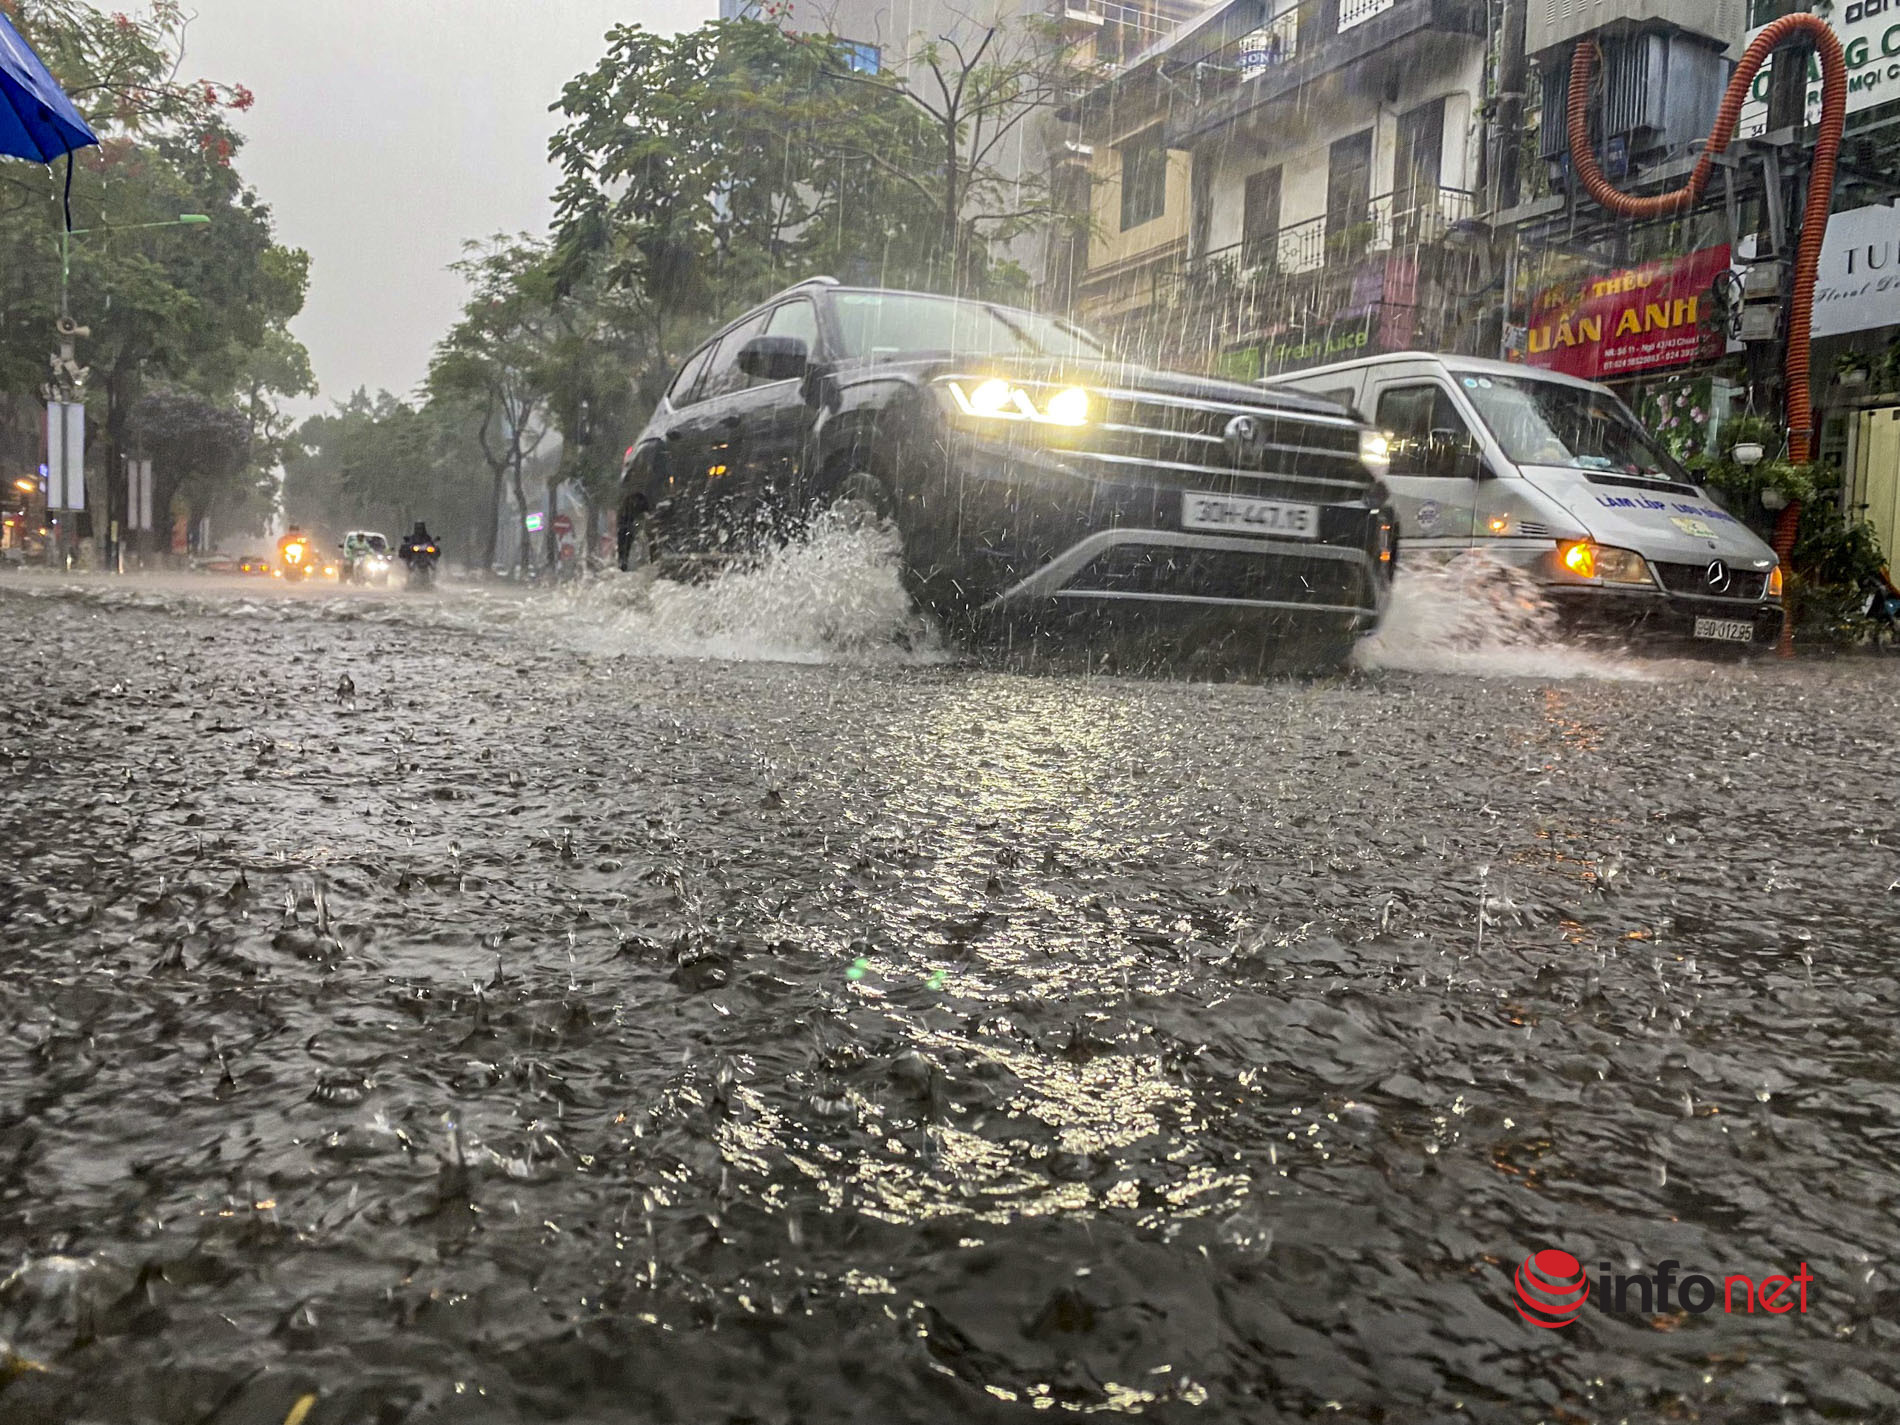 Hà Nội: Phố thành sông, ô tô chờ cứu hộ sau trận mưa lớn